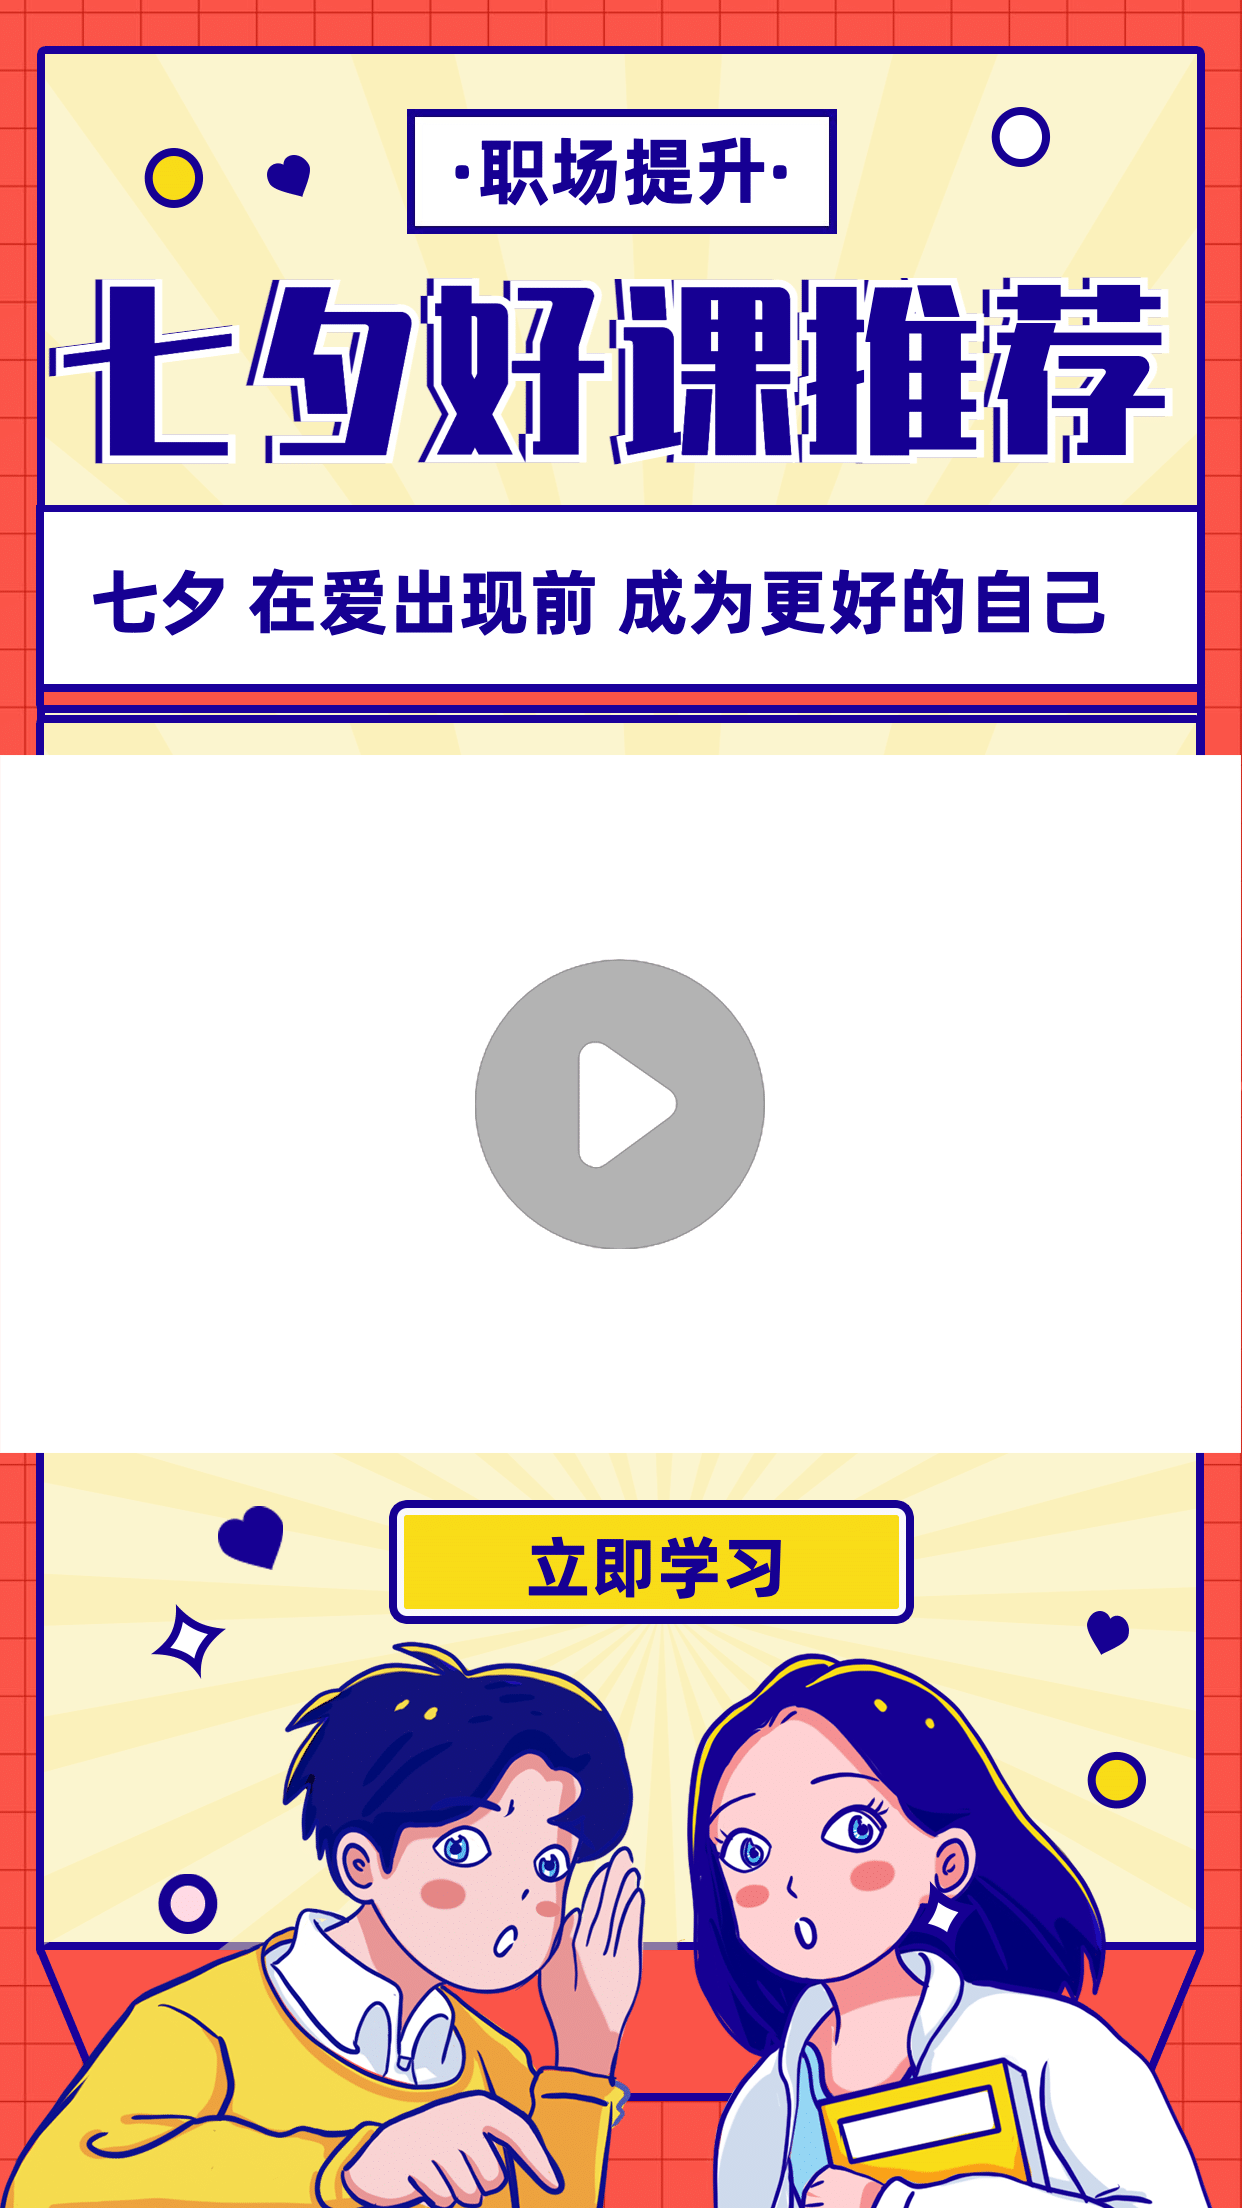 七夕情人节直播课程推荐视频边框